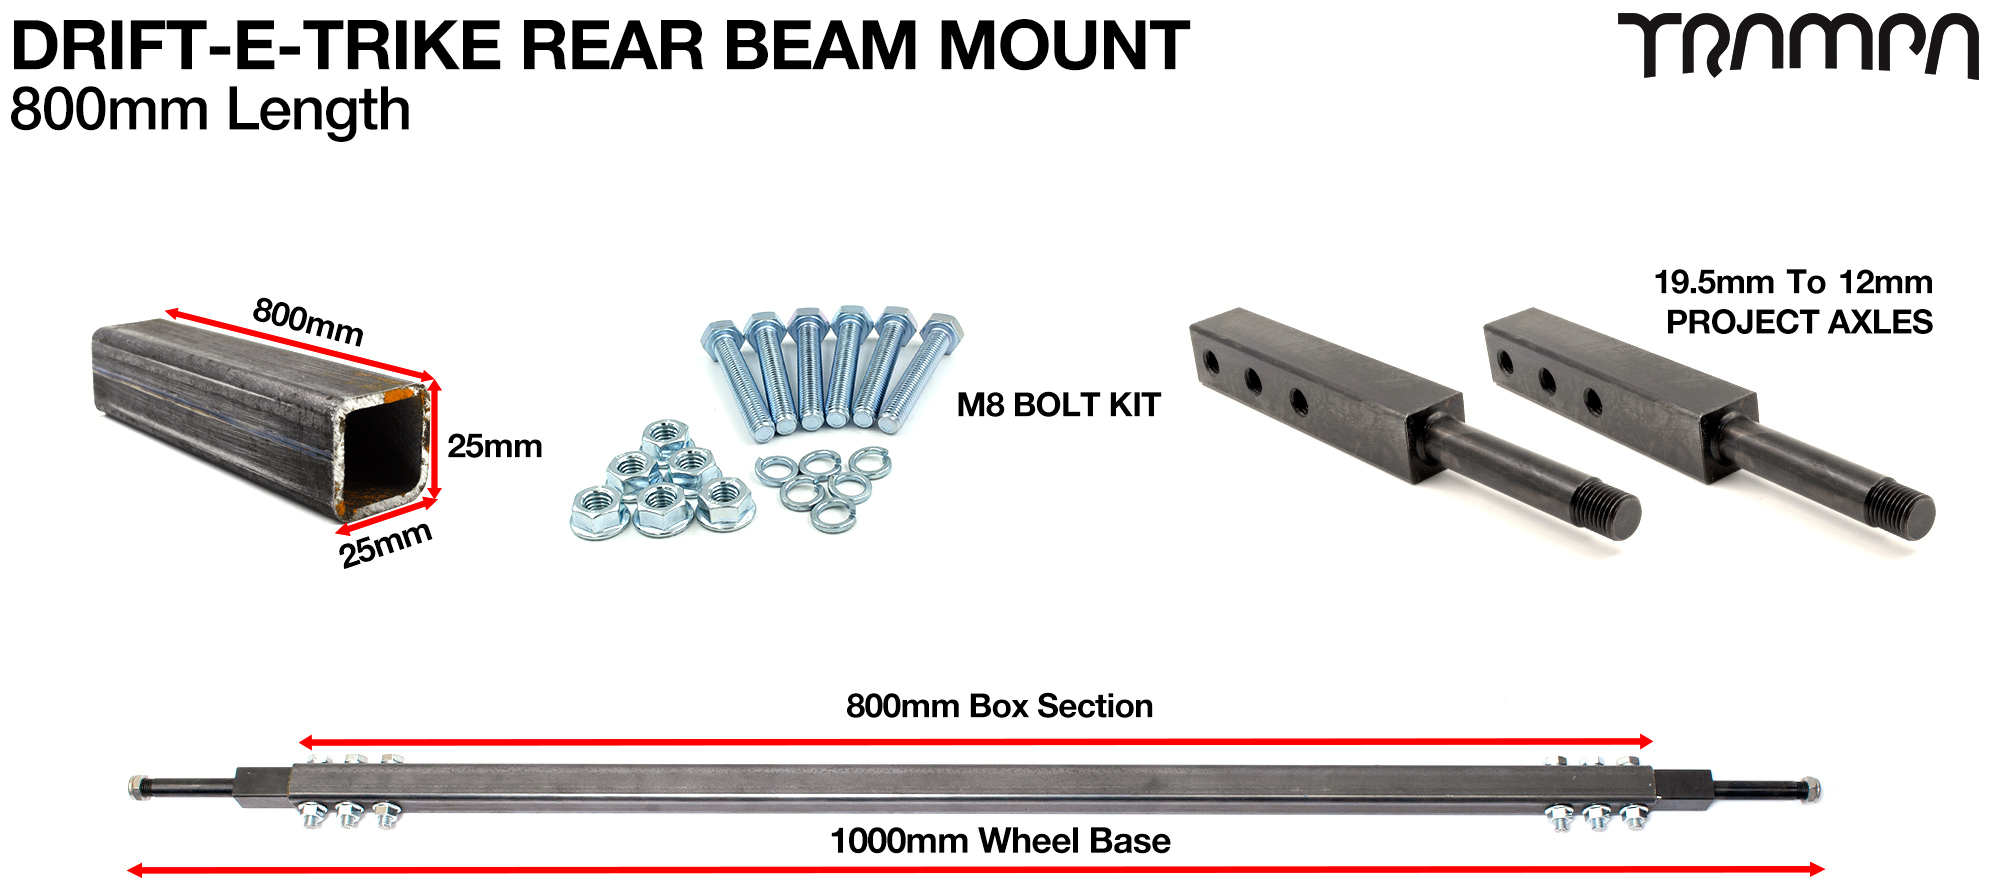 Rear Beam Motor Mount 1 Meter wide